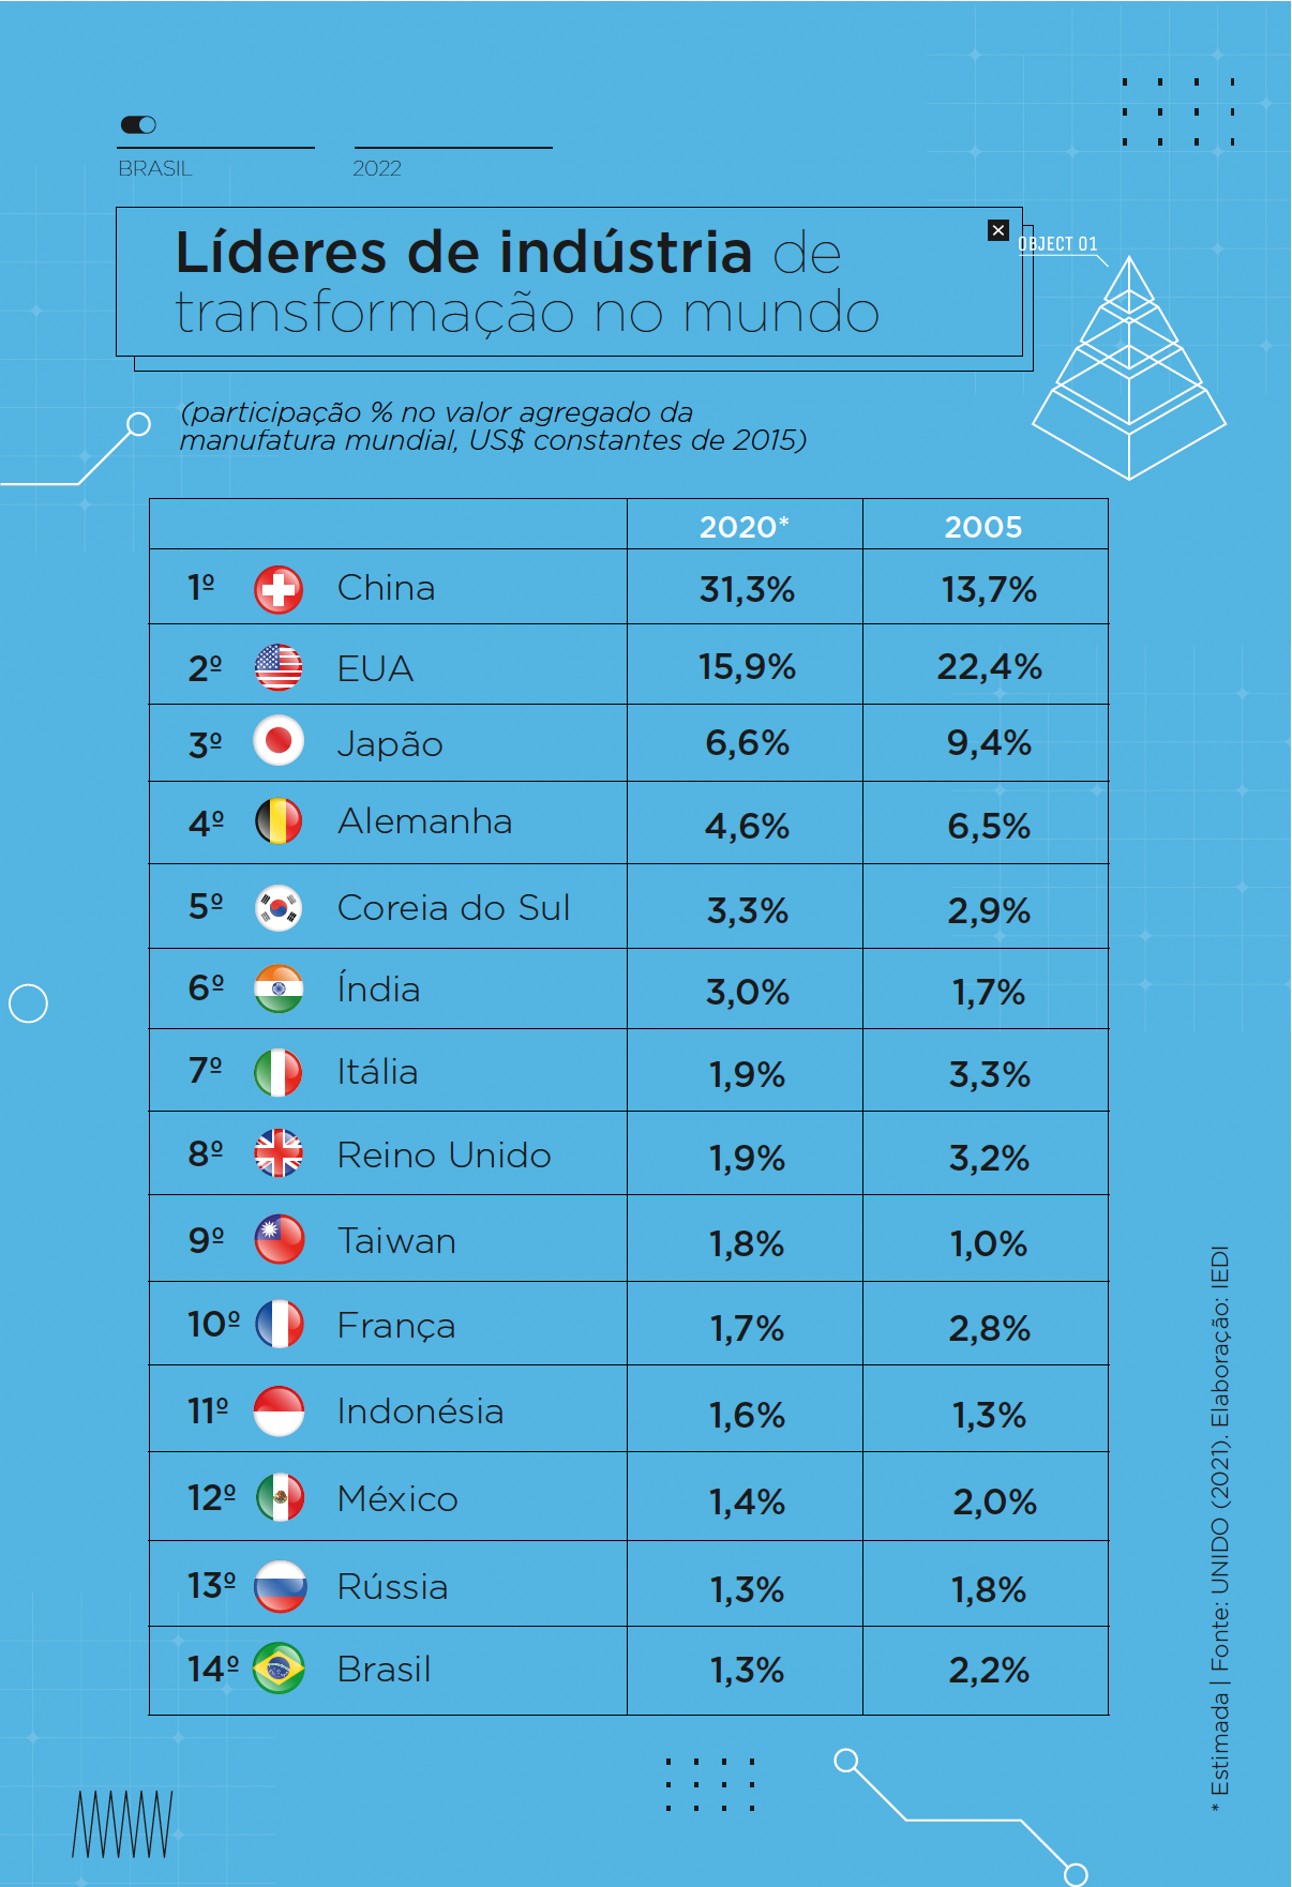 Brasil ocupa 14° lugar em investimentos voltados para a indústria de transformação no mundo